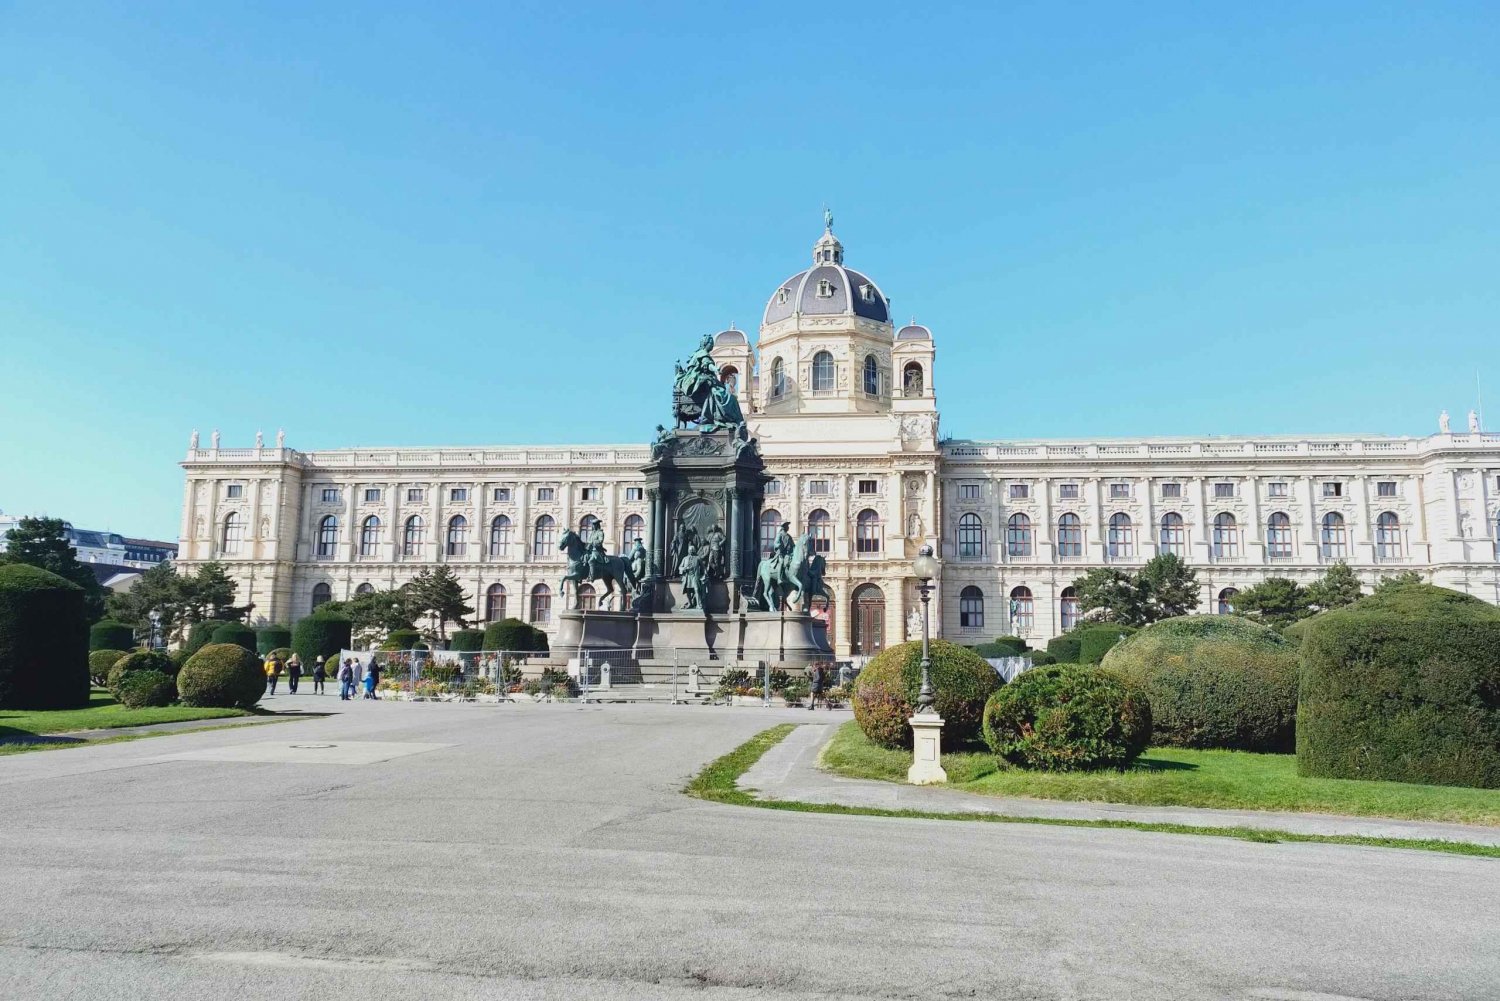 Passeio pela cidade com destaque histórico de Viena + degustação de vinhos